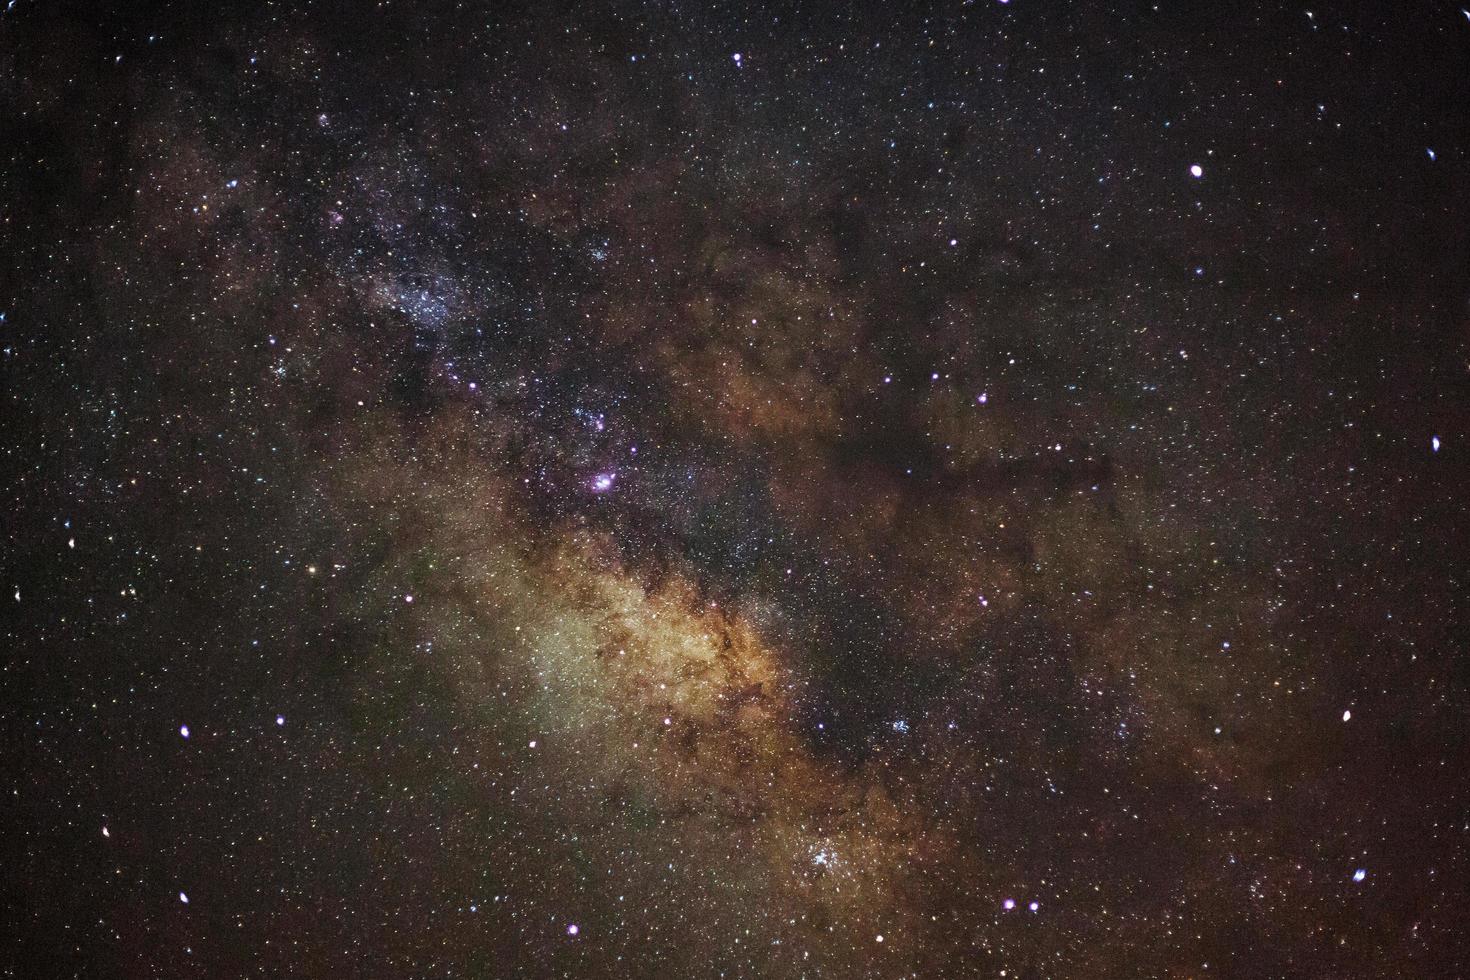 galaxie de la voie lactée, photographie longue exposition, avec grain photo